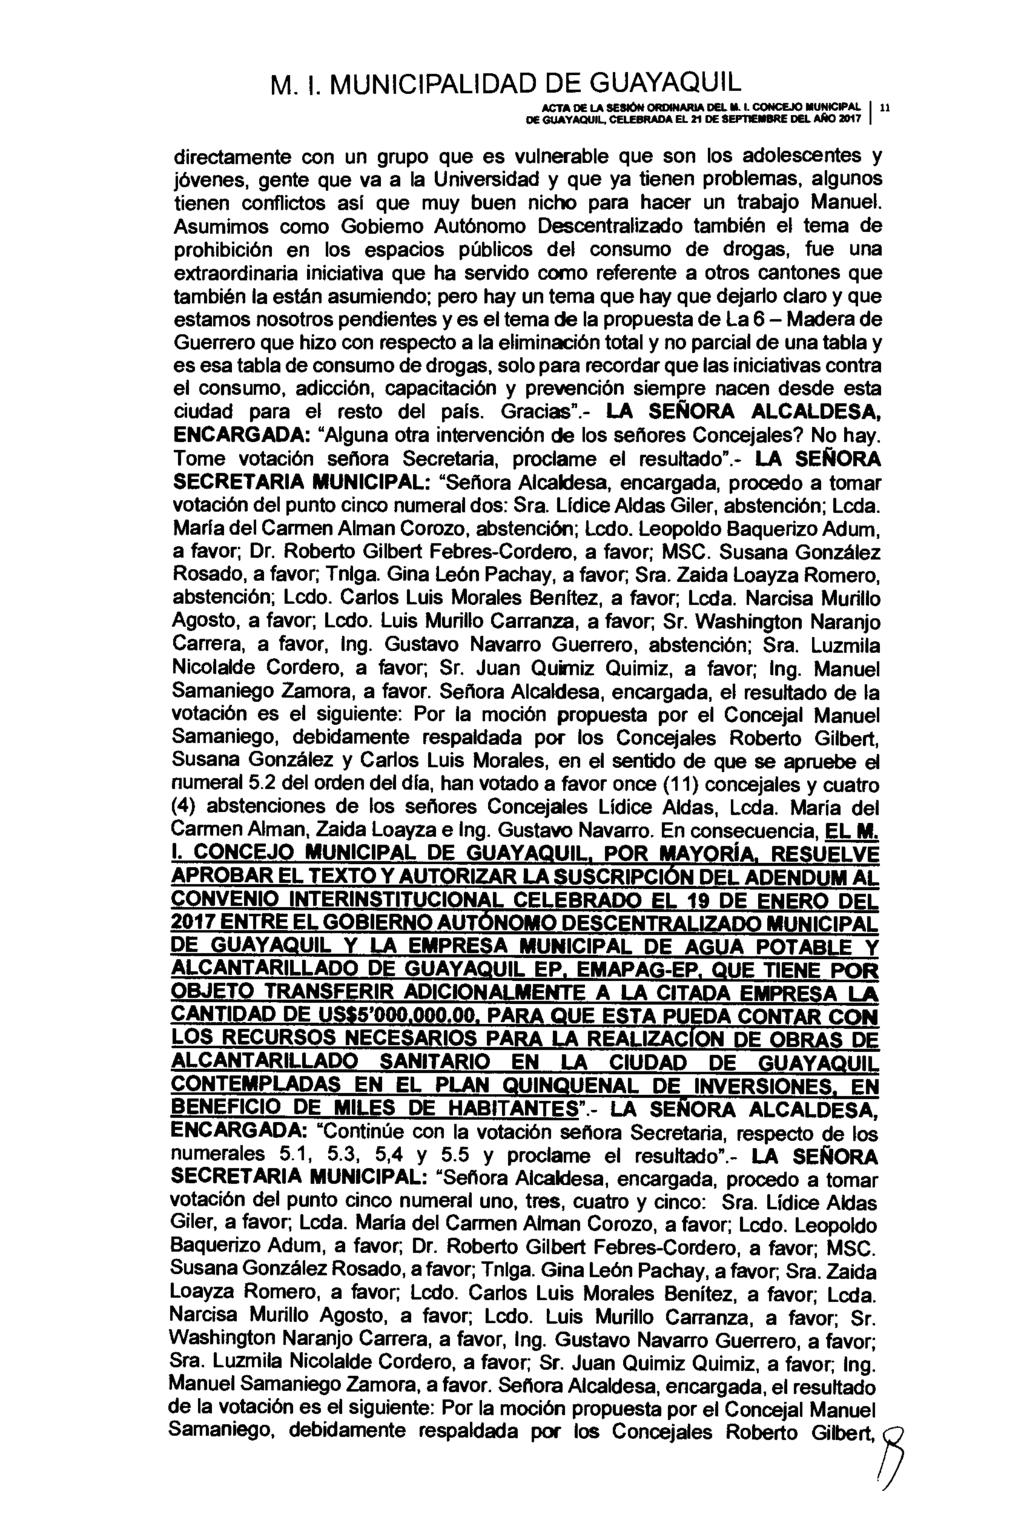 ACTA DE LA SESIÓN ORDINARIA DEL M. I. CONCEJO MUNICIPAL 11 DE GUAYAQUIL CELEBRADA EL 21 DE REMEMBRE DEI.